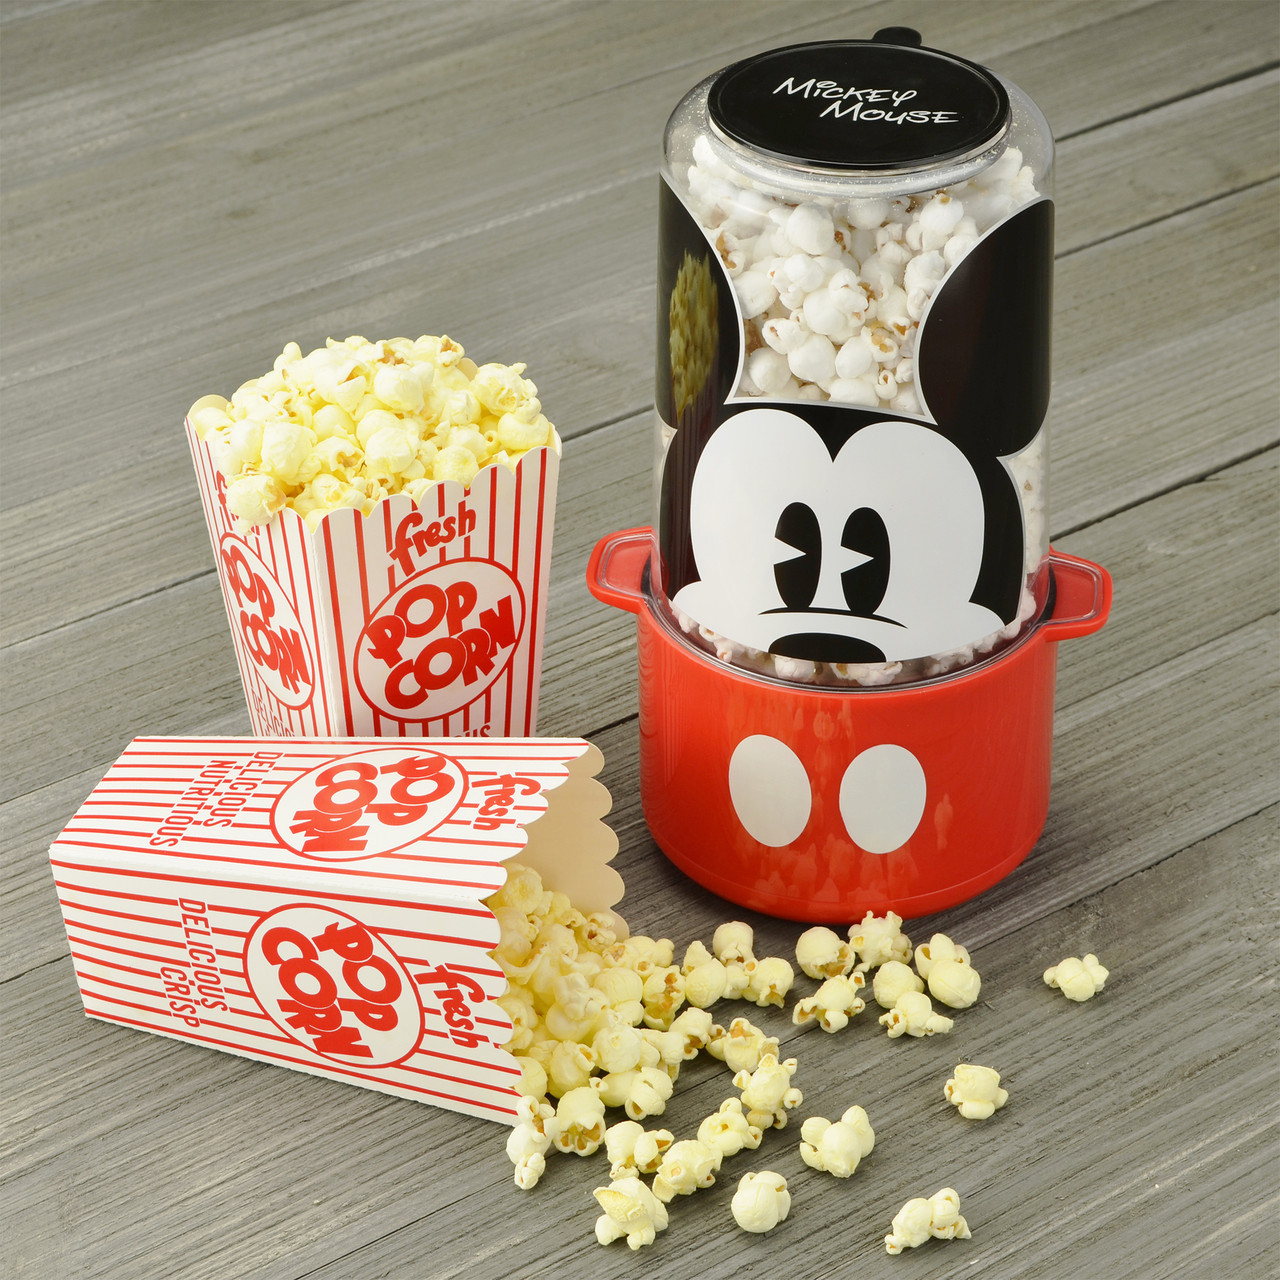 Disney Mickey Mouse Popcorn Popper